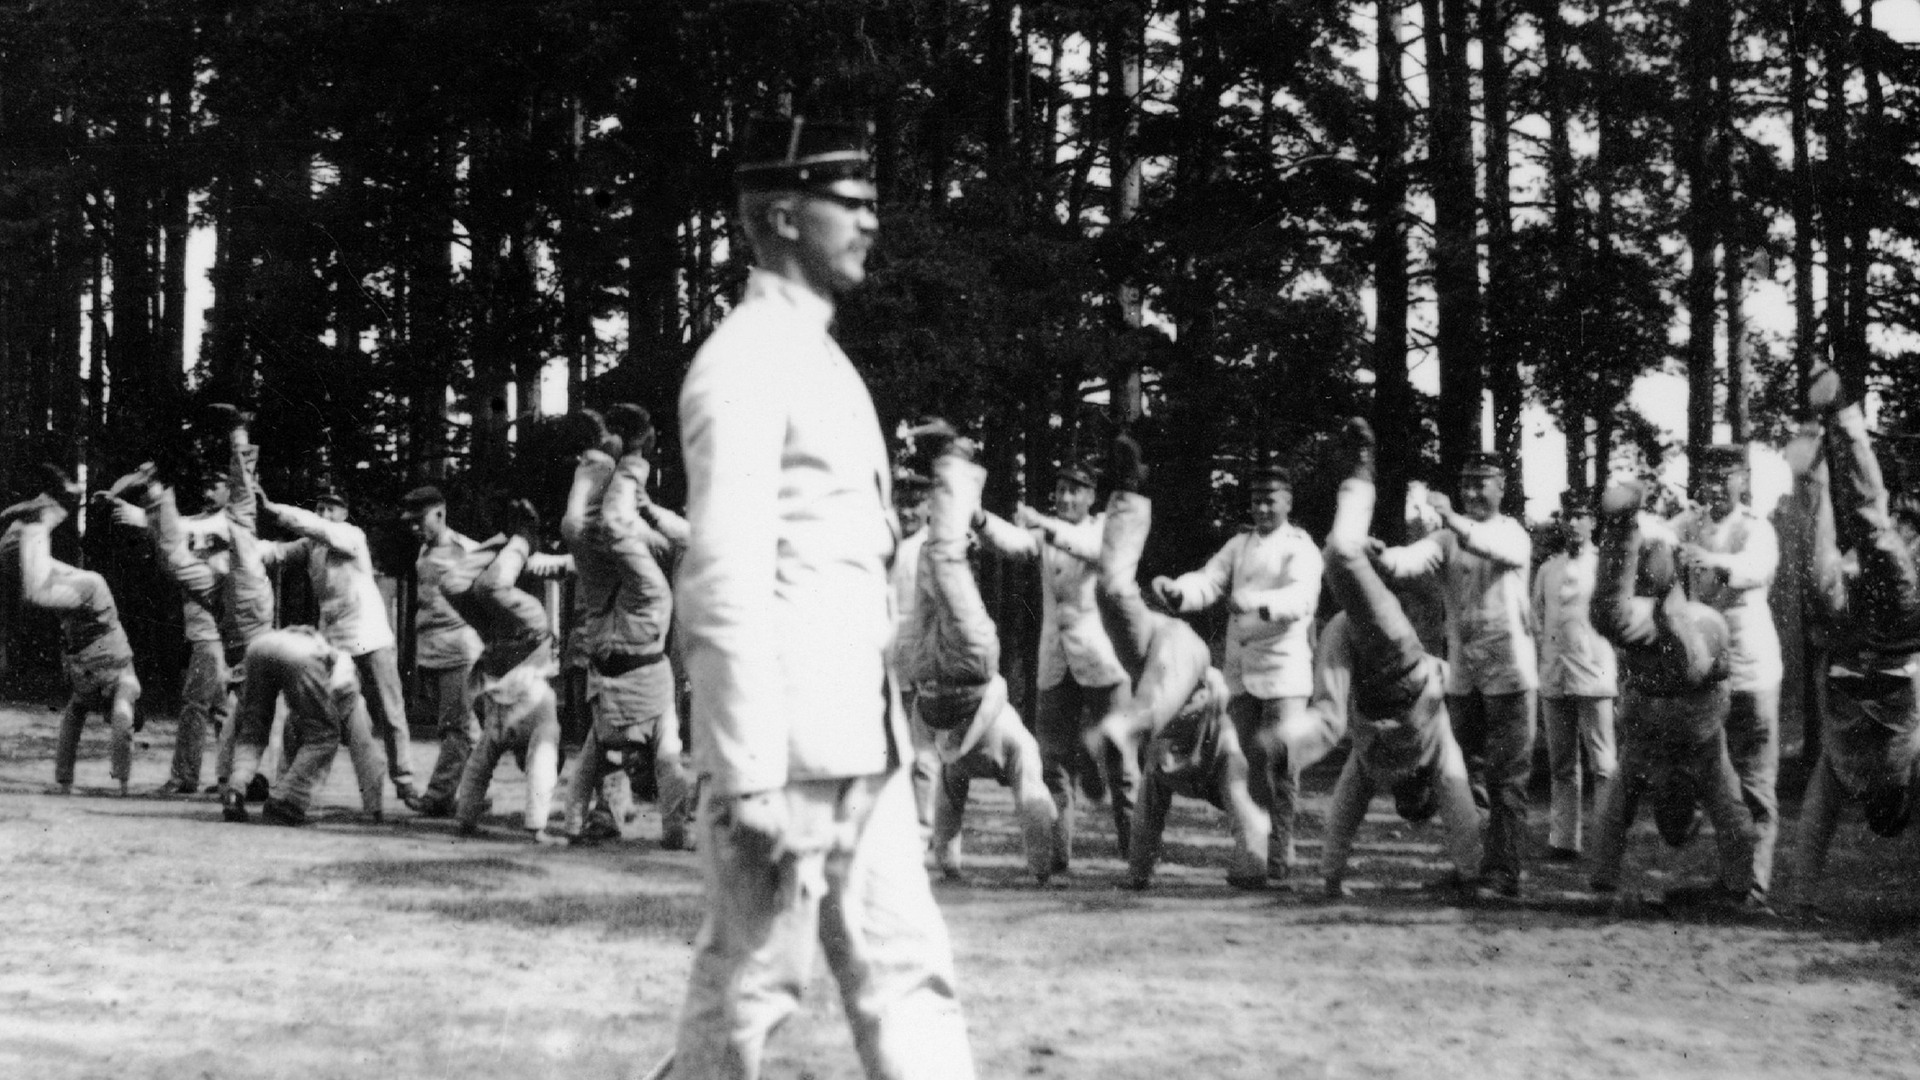 En man leder gymnastikövningen, i bakgrunden syns tränande soldater.